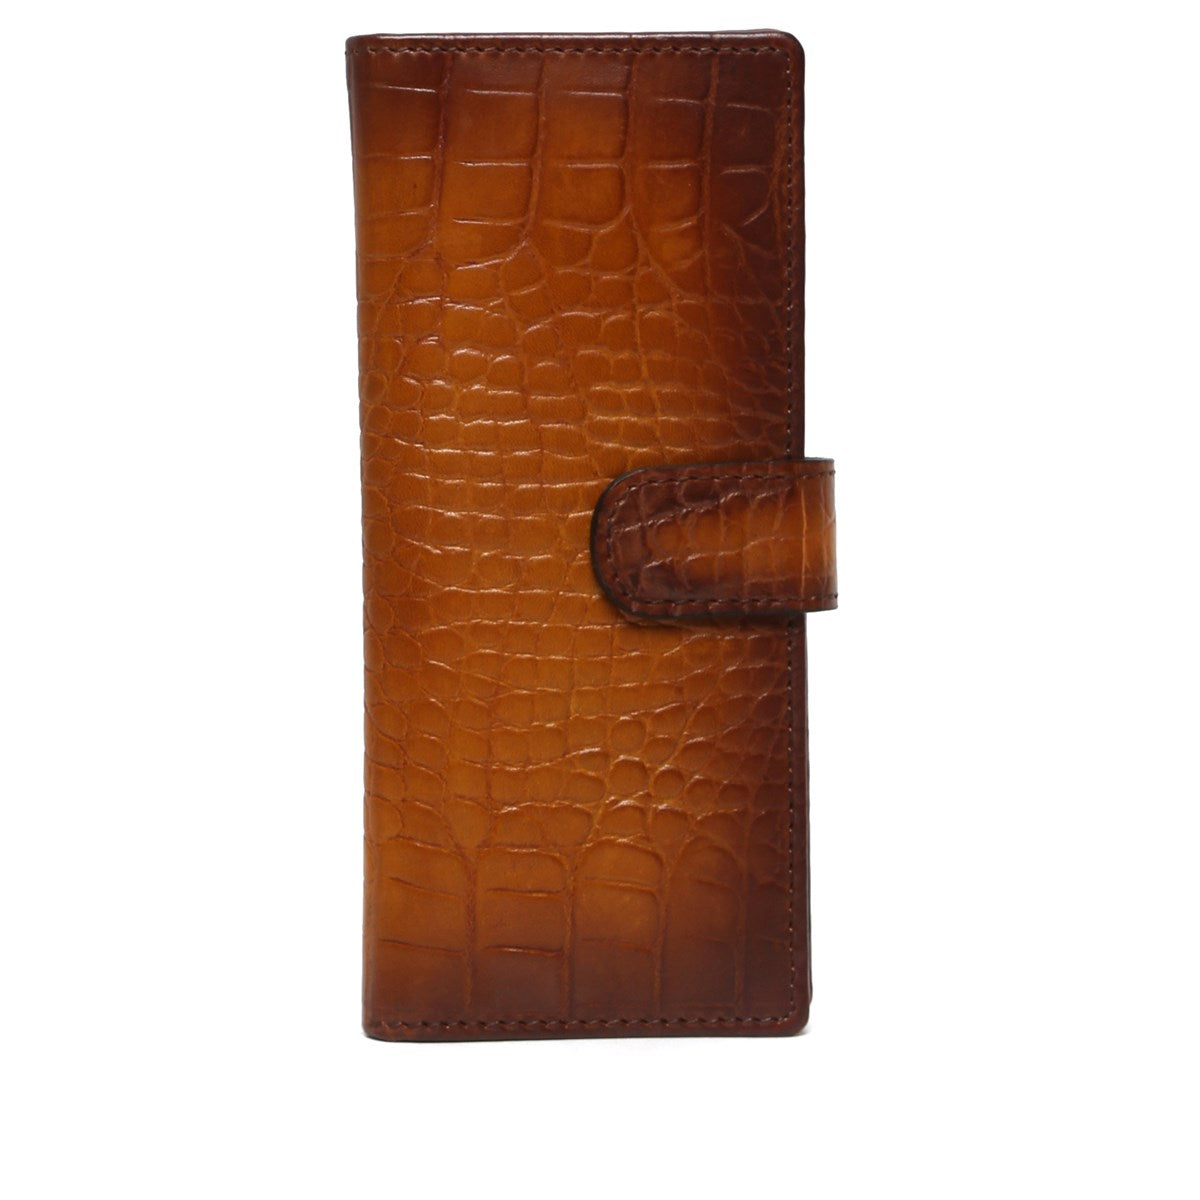 Tan Croco Print Leather Long Wallet